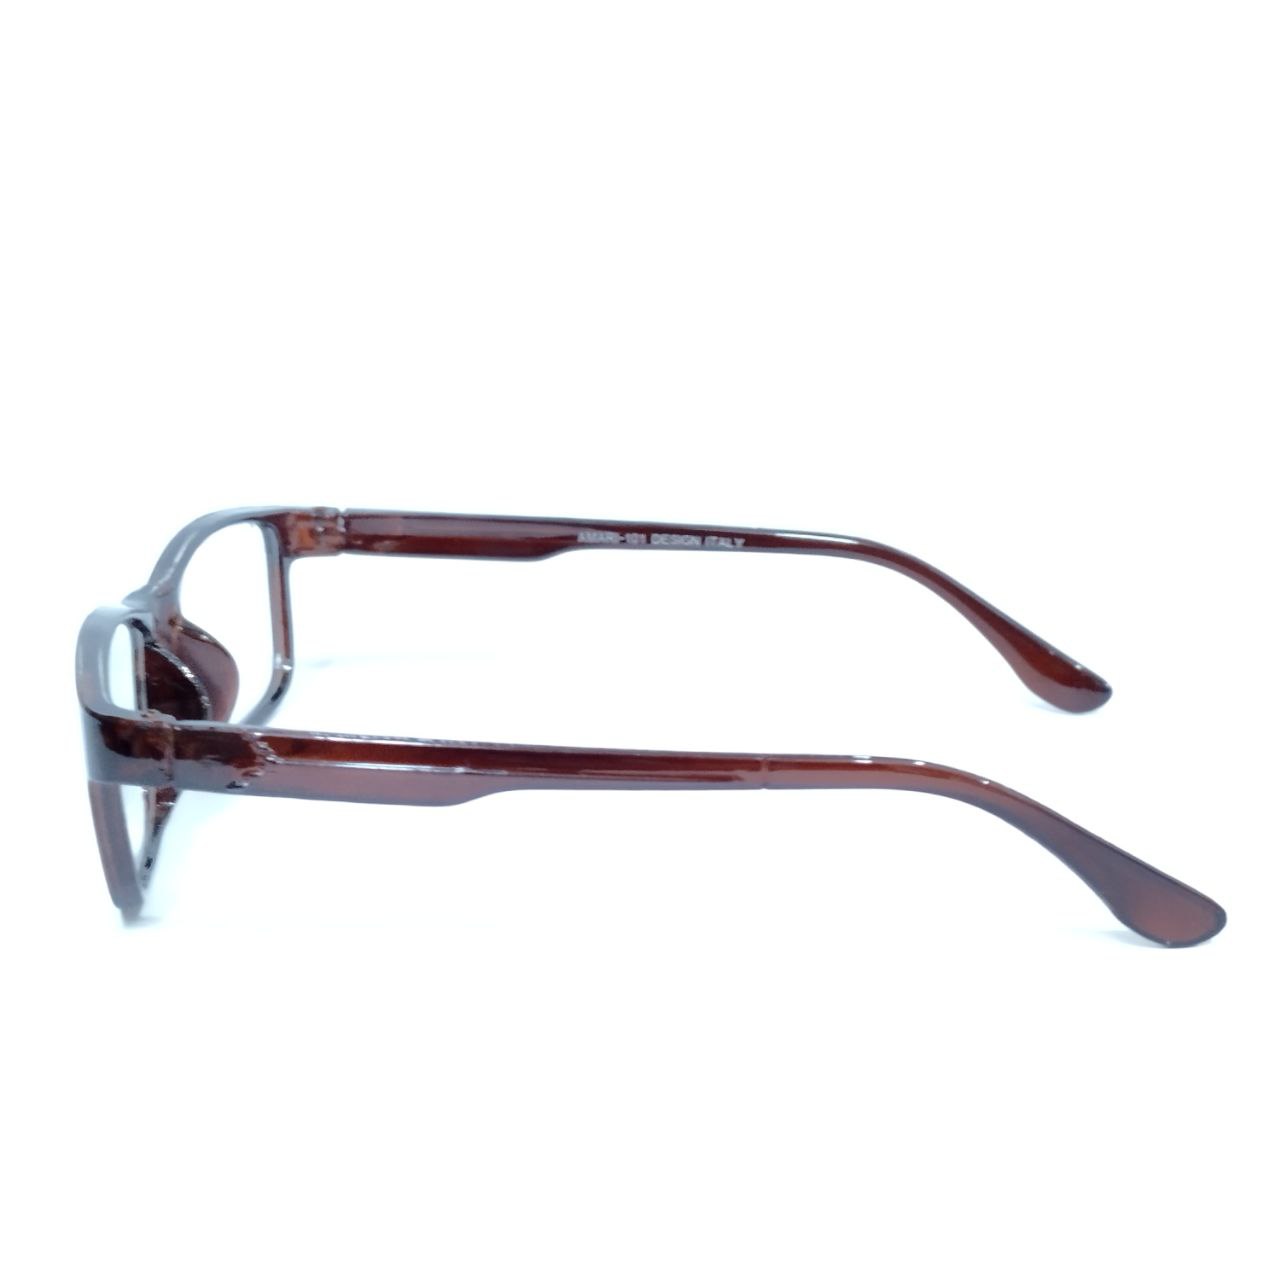 Bifocal Reading Glasses for Men and Women Kryptok Lens Power 1.50